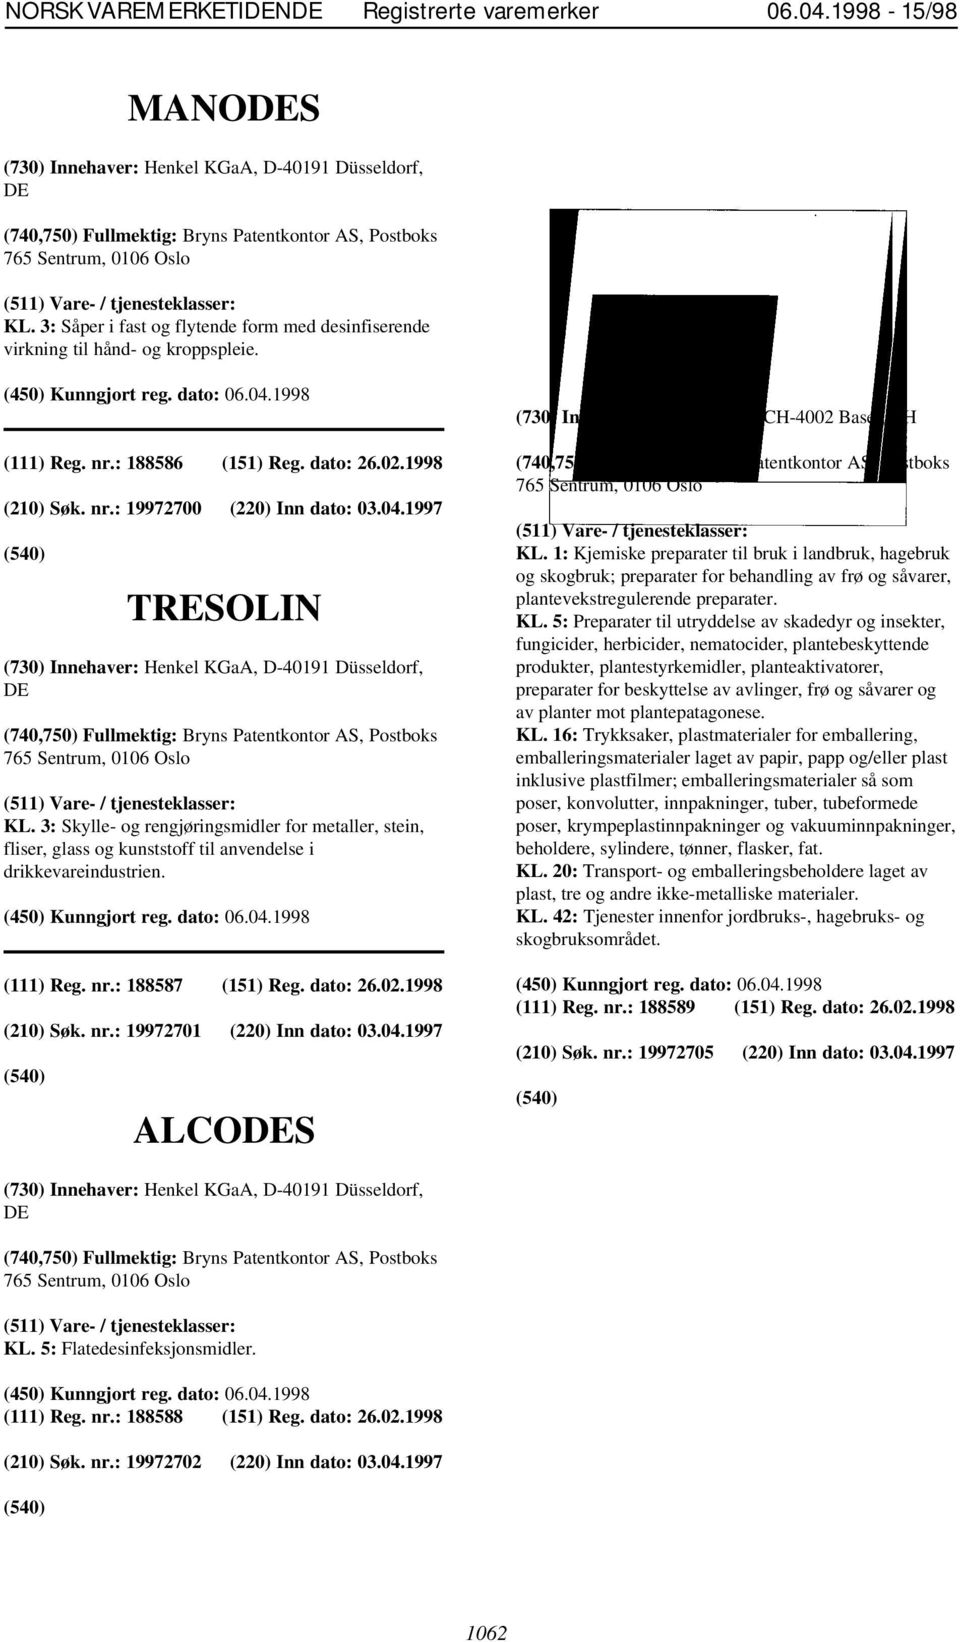 1997 TRESOLIN (730) Innehaver: Henkel KGaA, D-40191 Düsseldorf, DE KL. 3: Skylle- og rengjøringsmidler for metaller, stein, fliser, glass og kunststoff til anvendelse i drikkevareindustrien.